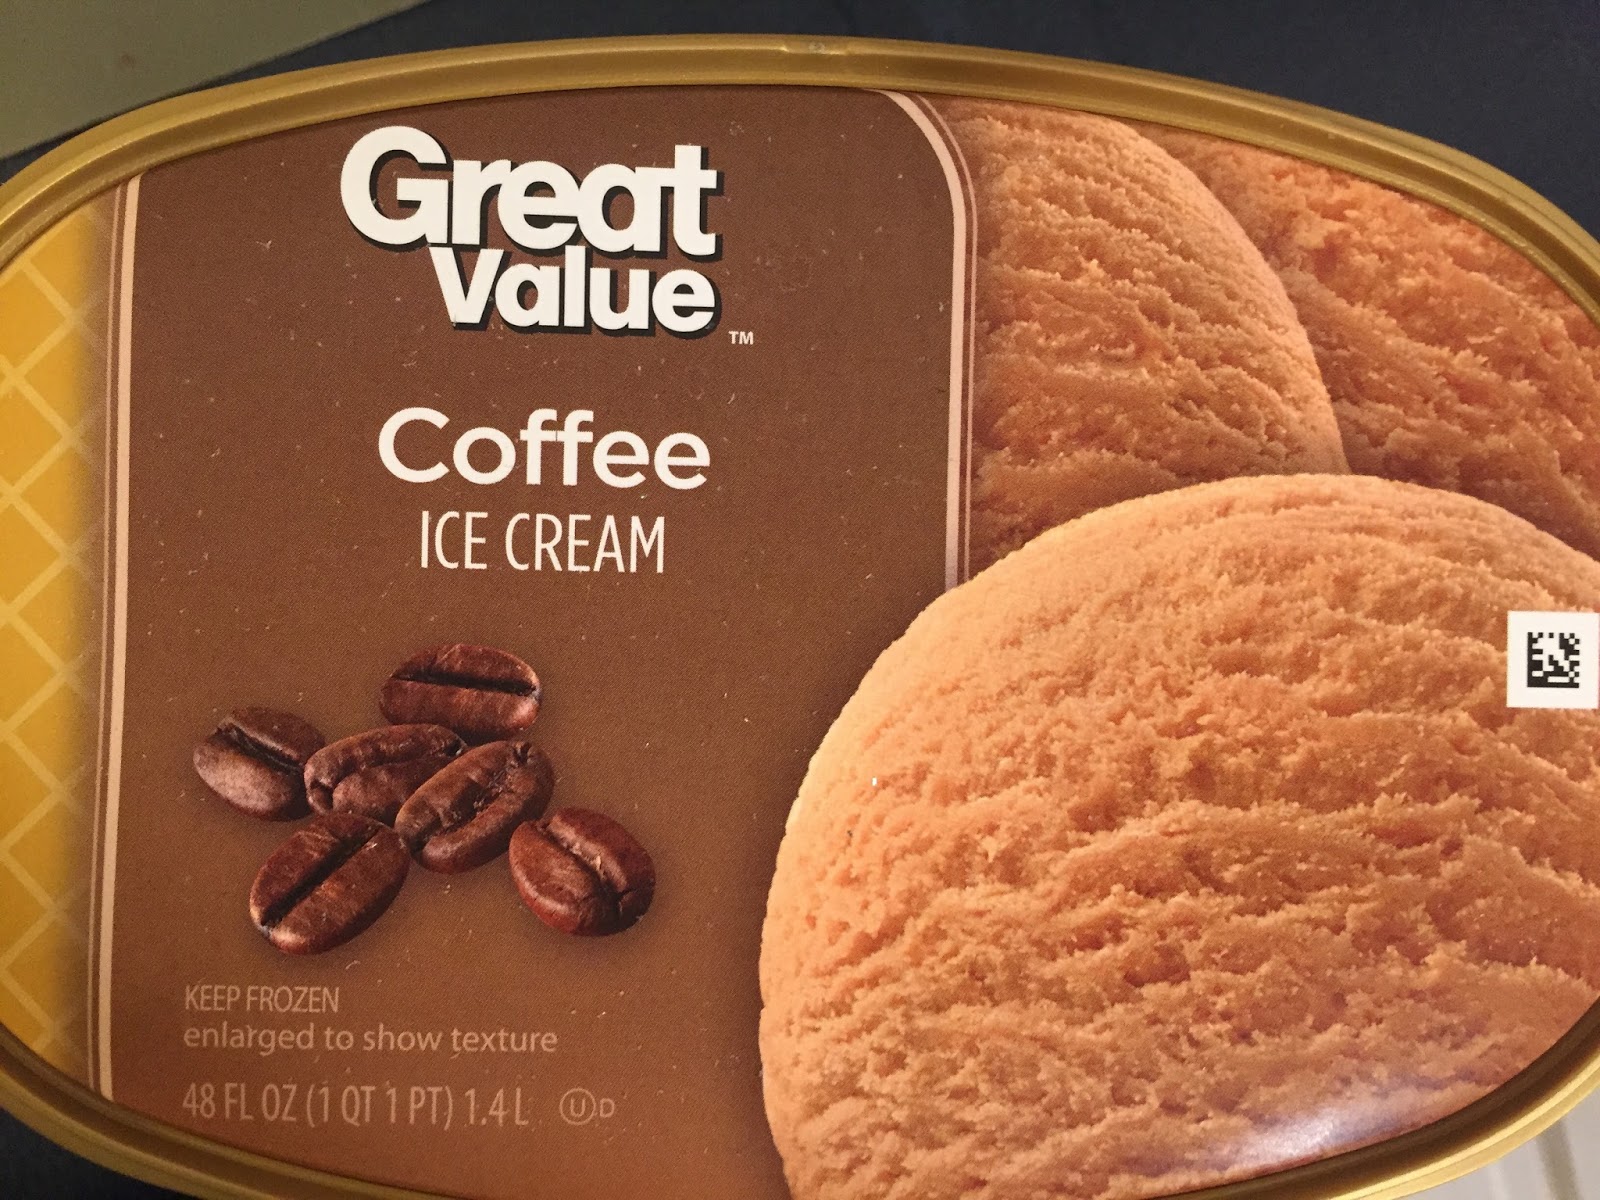 Great Value Cookies & Cream Ice Cream, 48 fl oz